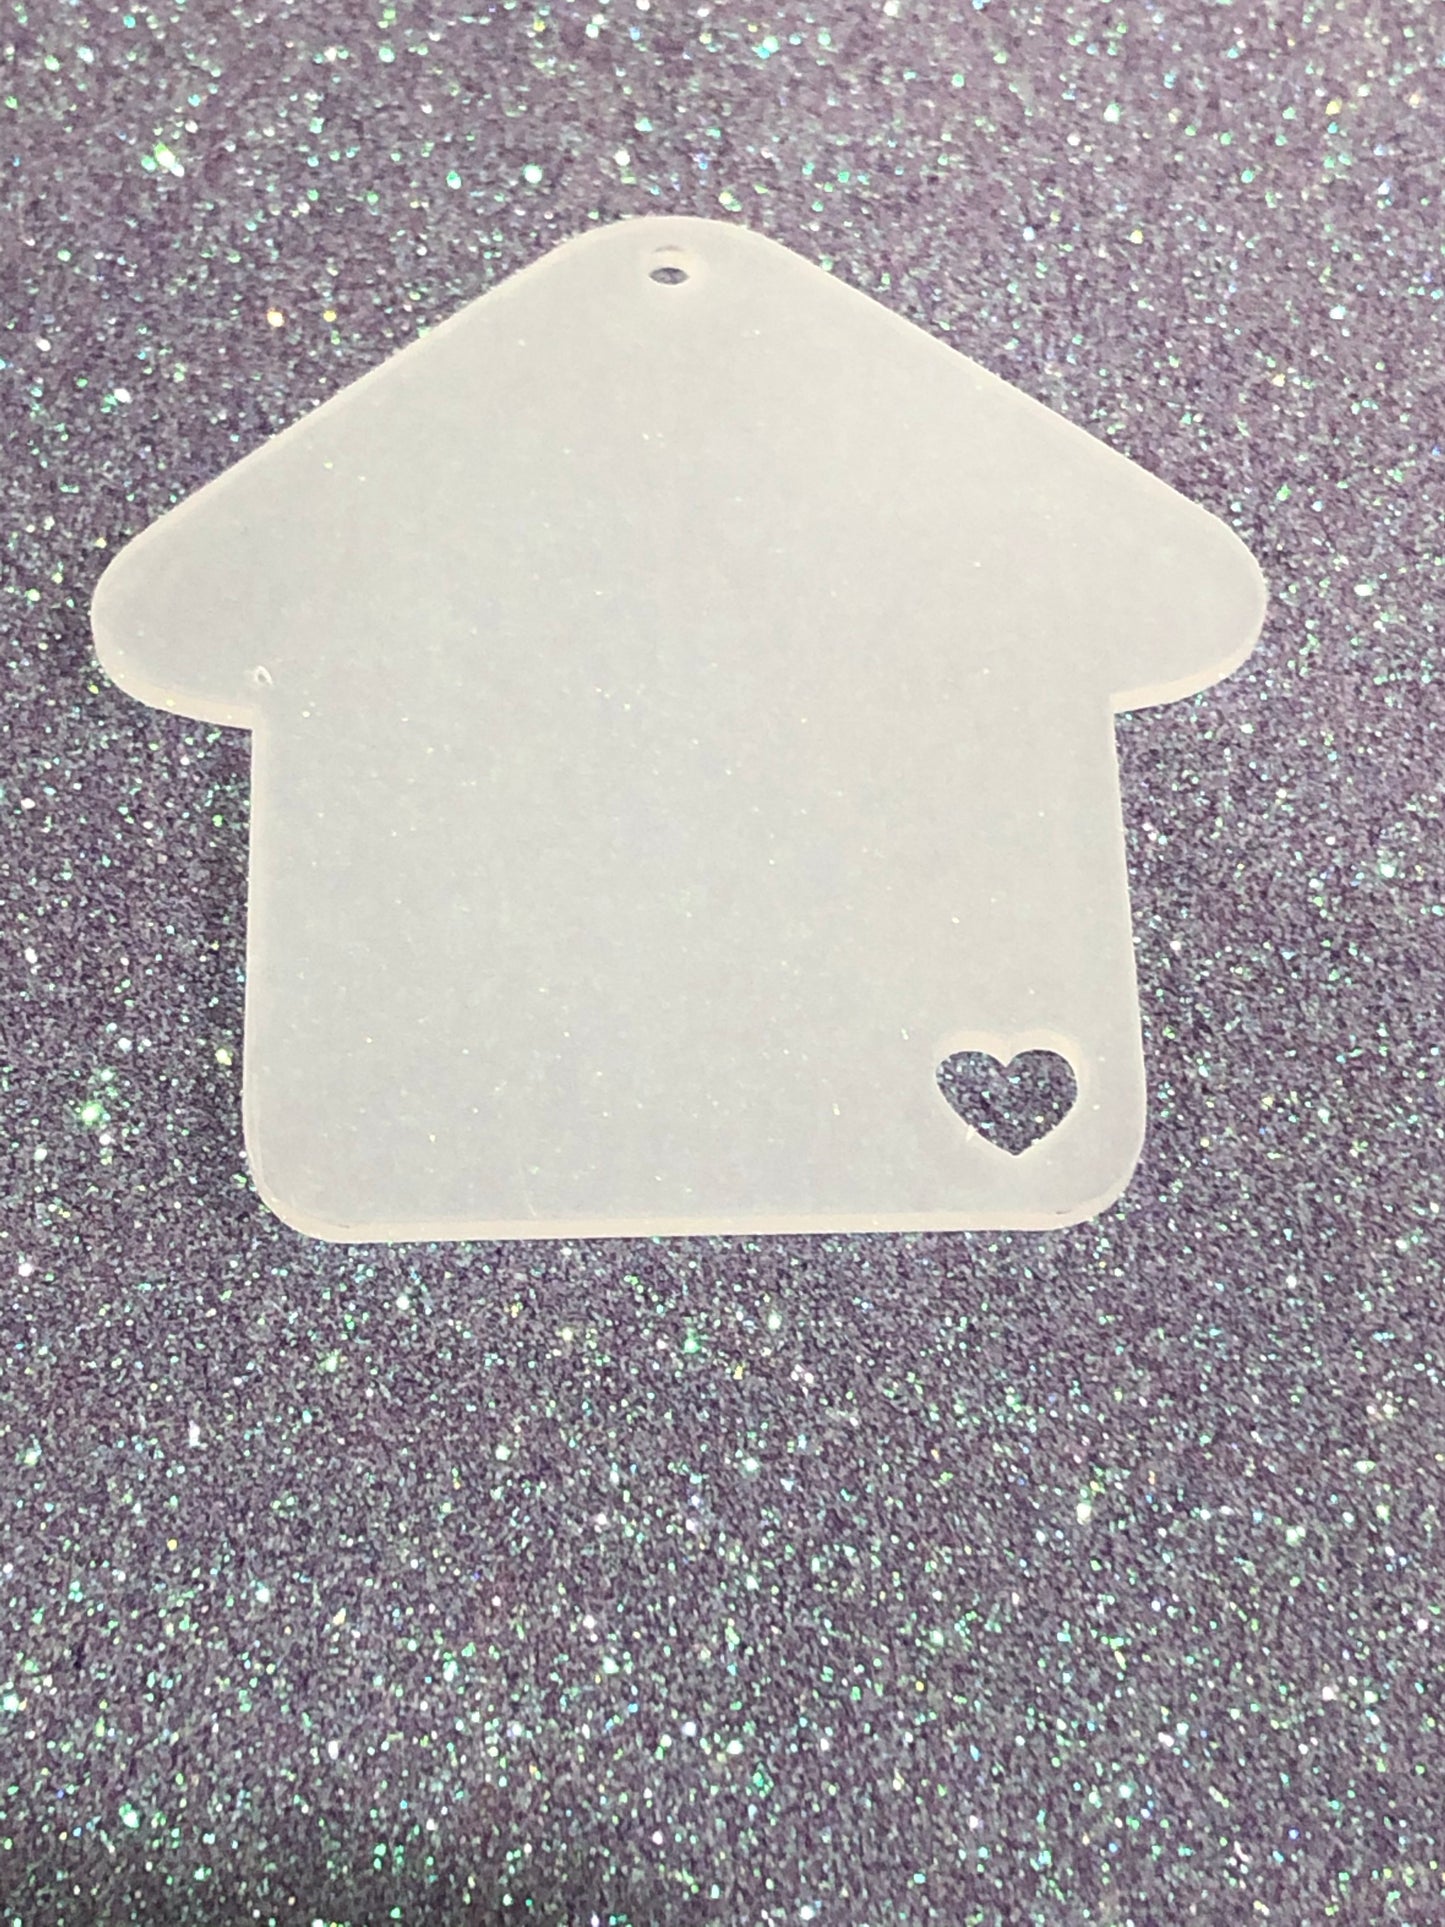 3" Acrylic House Blank  with heart cutout